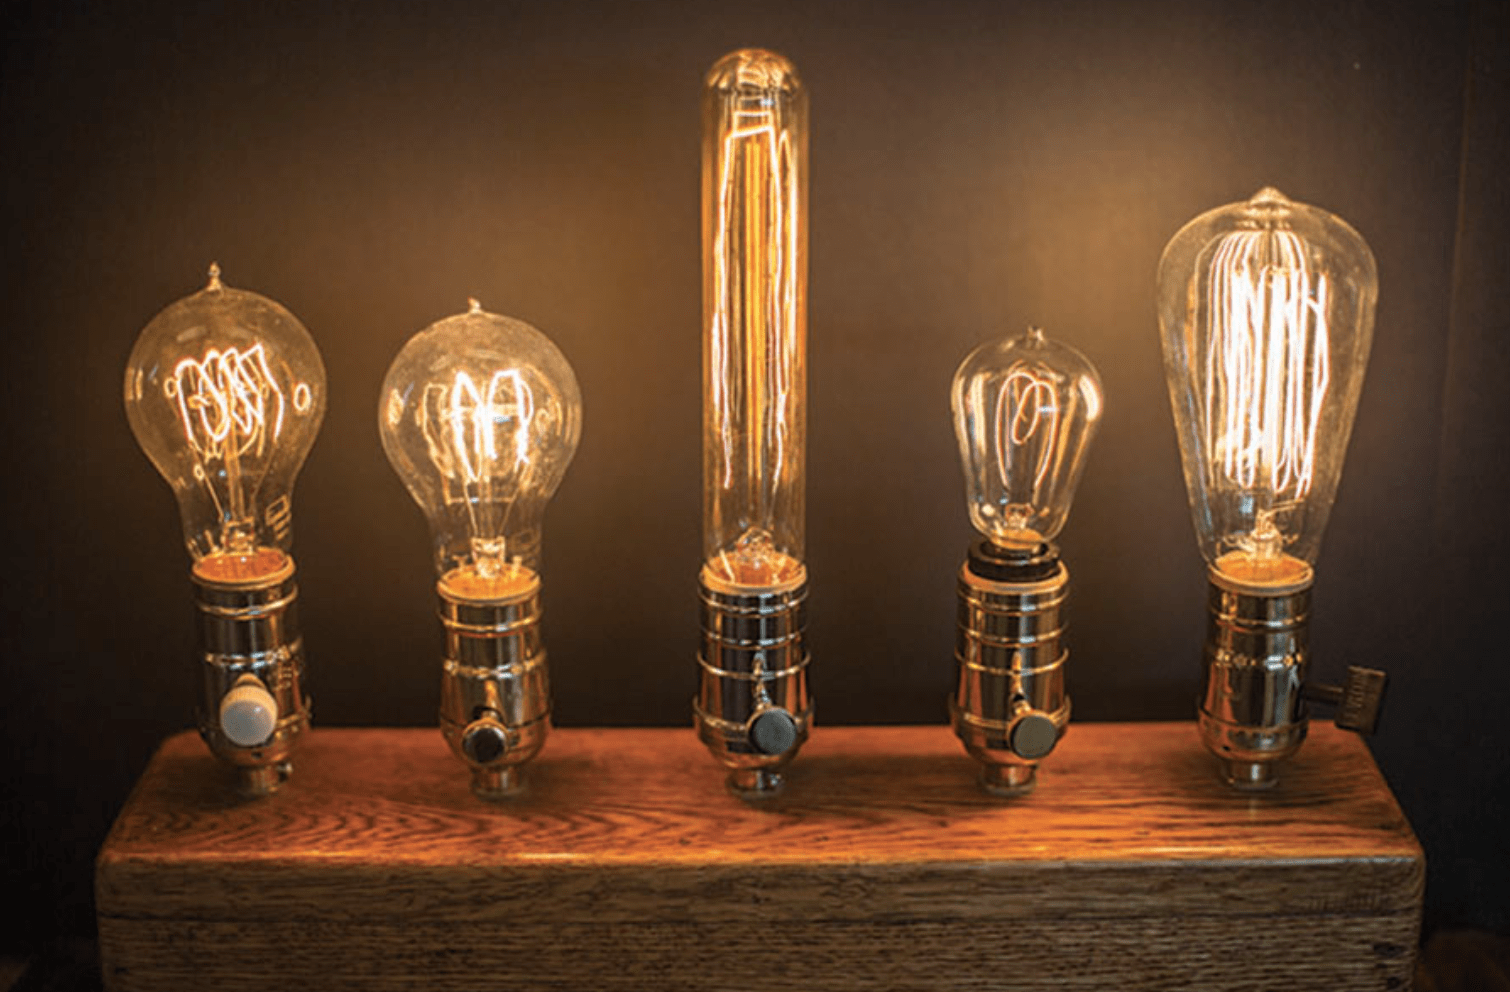 История изобретения лампы. Электрическая лампа Томаса Эдисона.